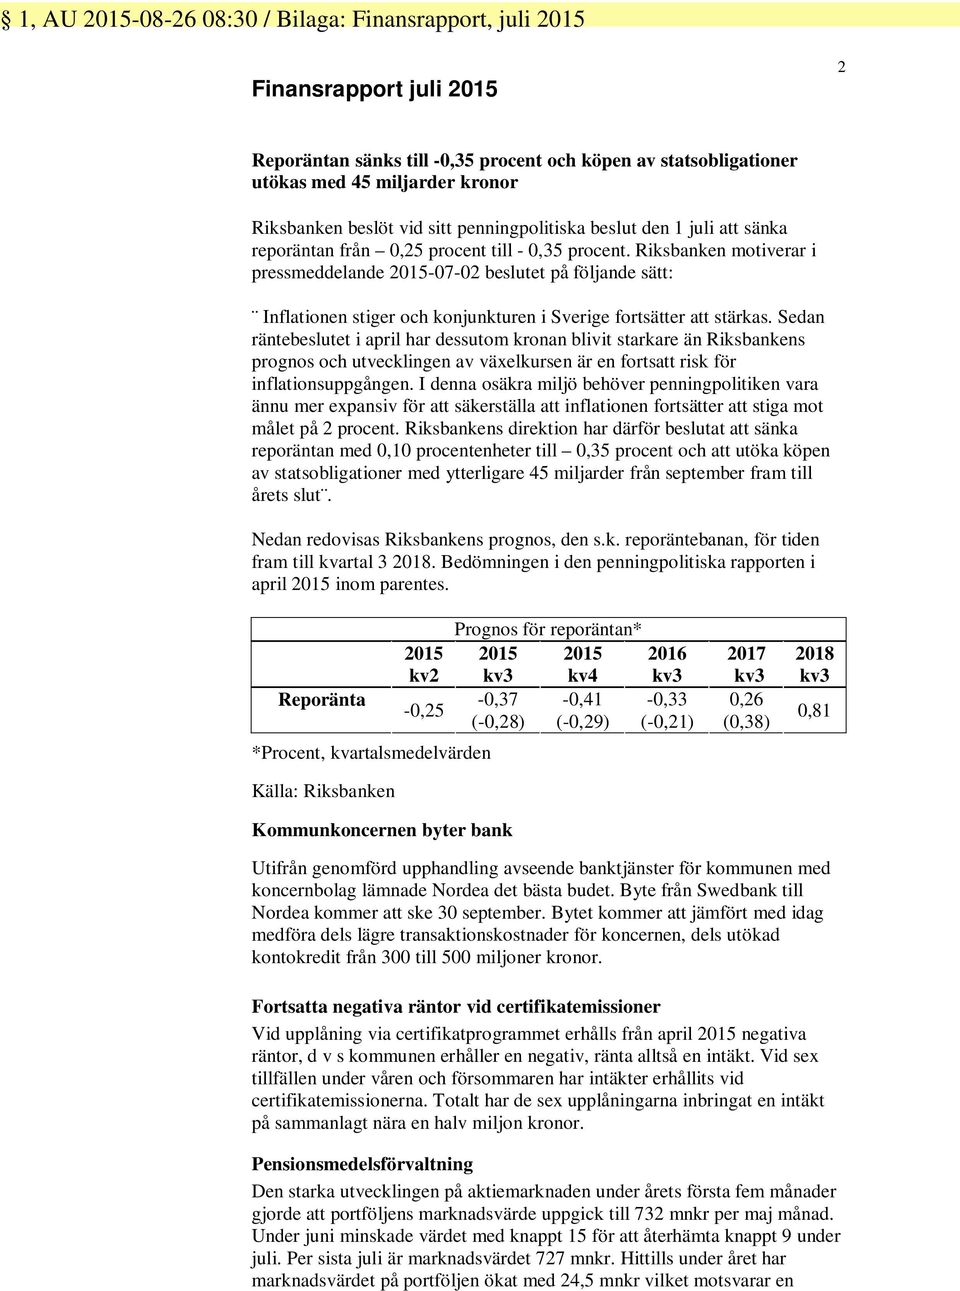 Riksbanken motiverar i pressmeddelande 2015-07-02 beslutet på följande sätt: Inflationen stiger och konjunkturen i Sverige fortsätter att stärkas.